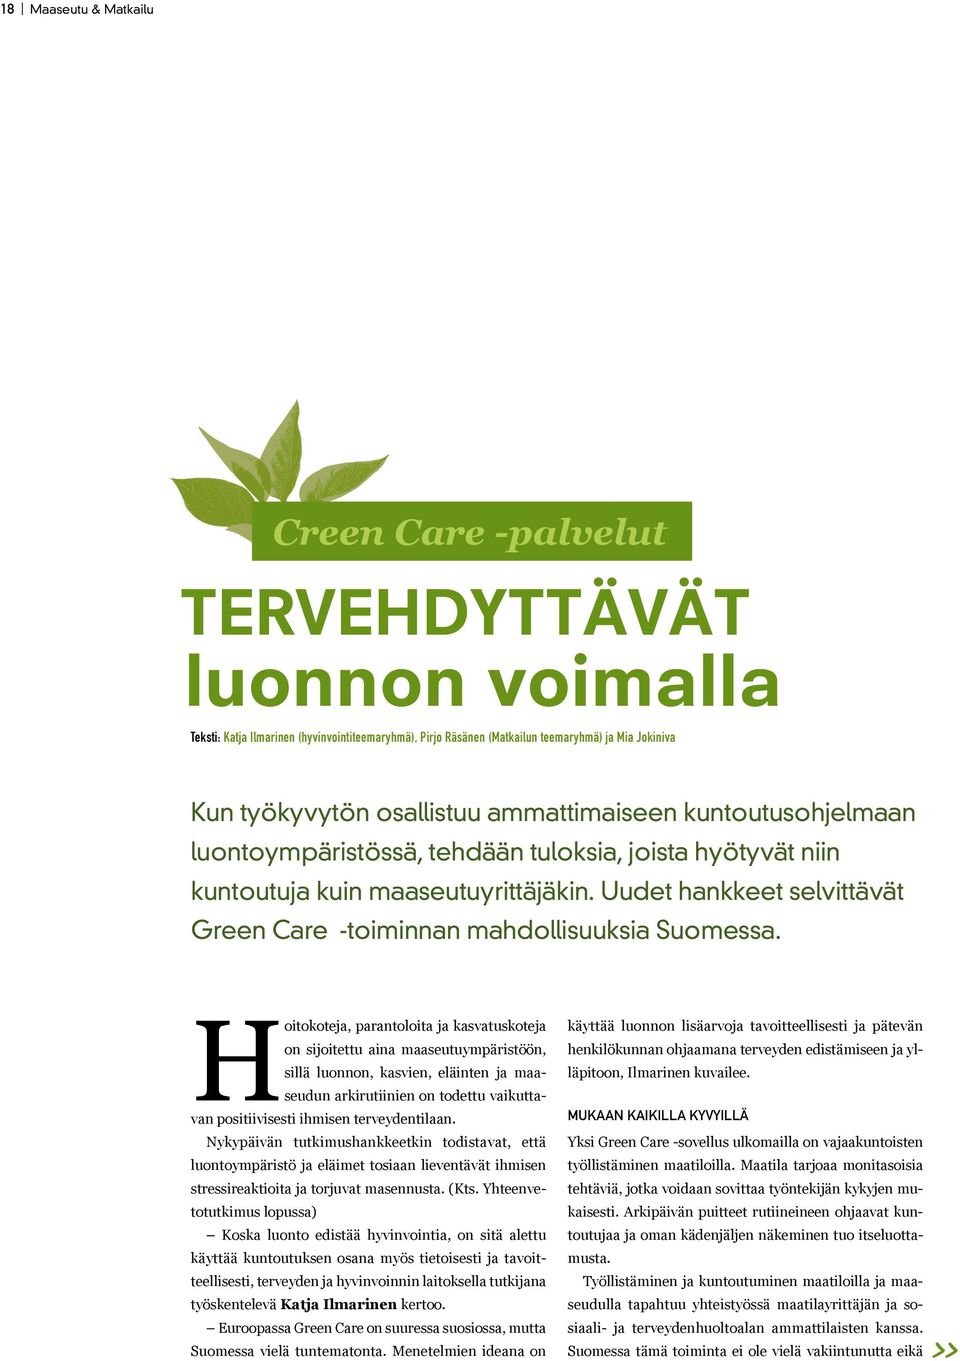 Uudet hankkeet selvittävät Green Care -toiminnan mahdollisuuksia Suomessa.